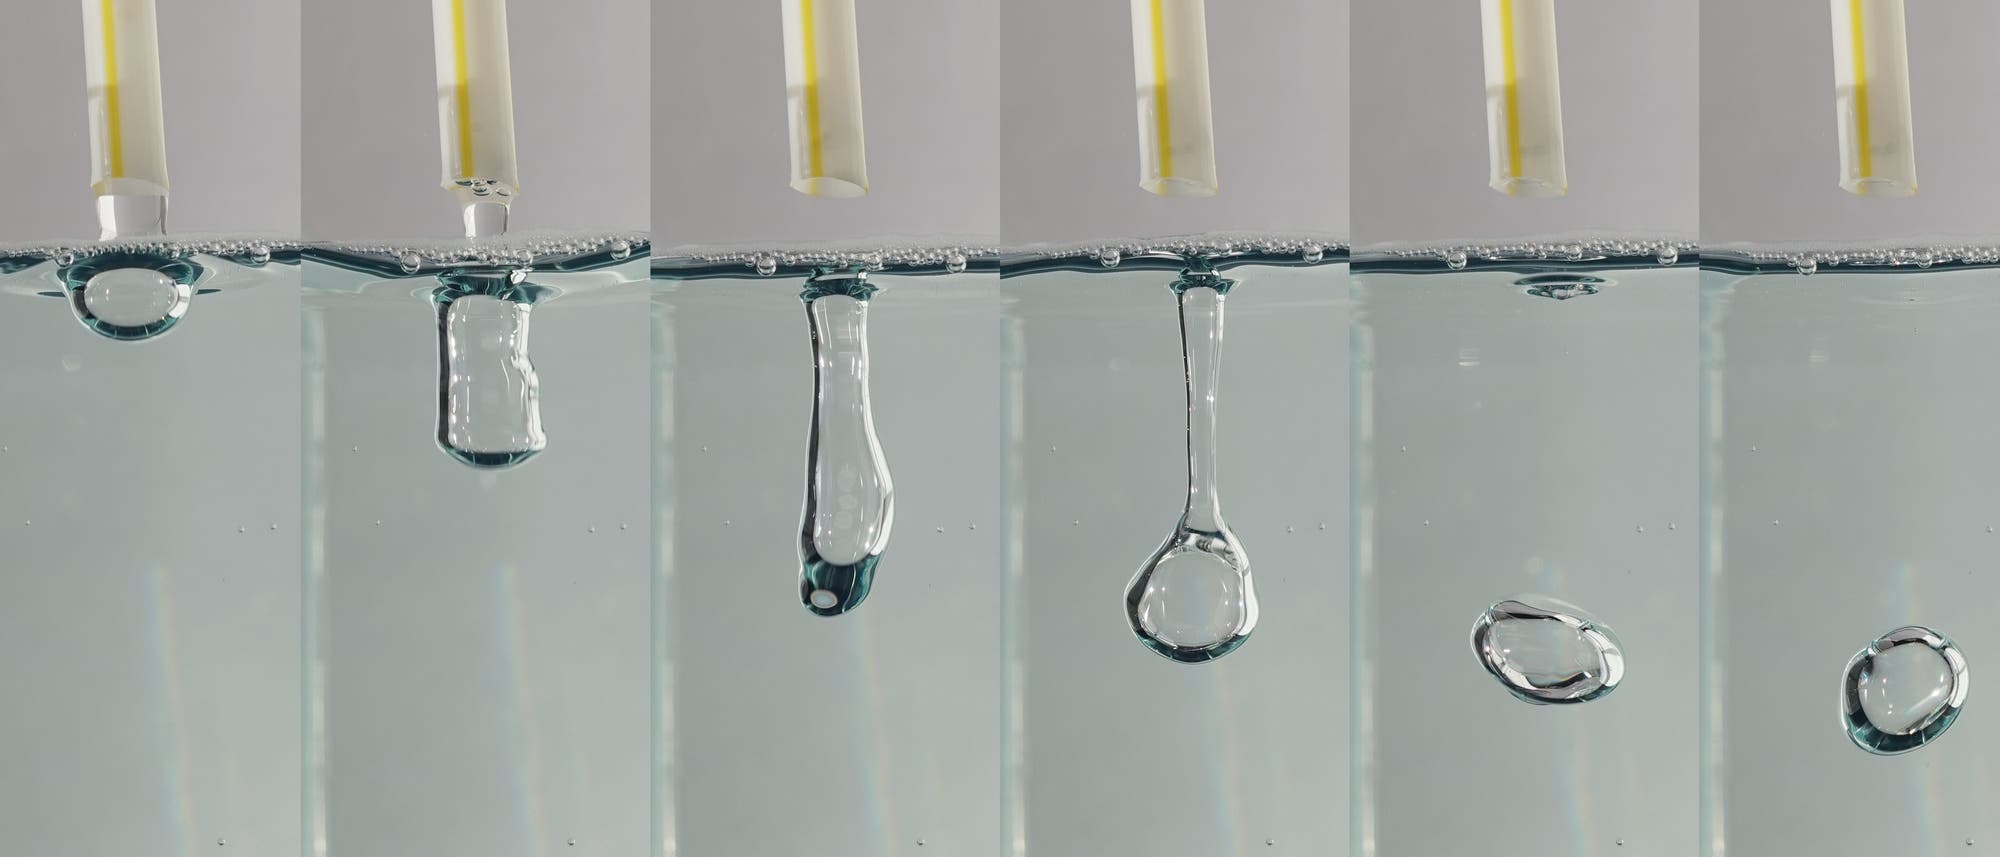 Eine Bildfolge zeigt die Erzeugung einer mit Flüssigkeit gefüllten Lufthülle